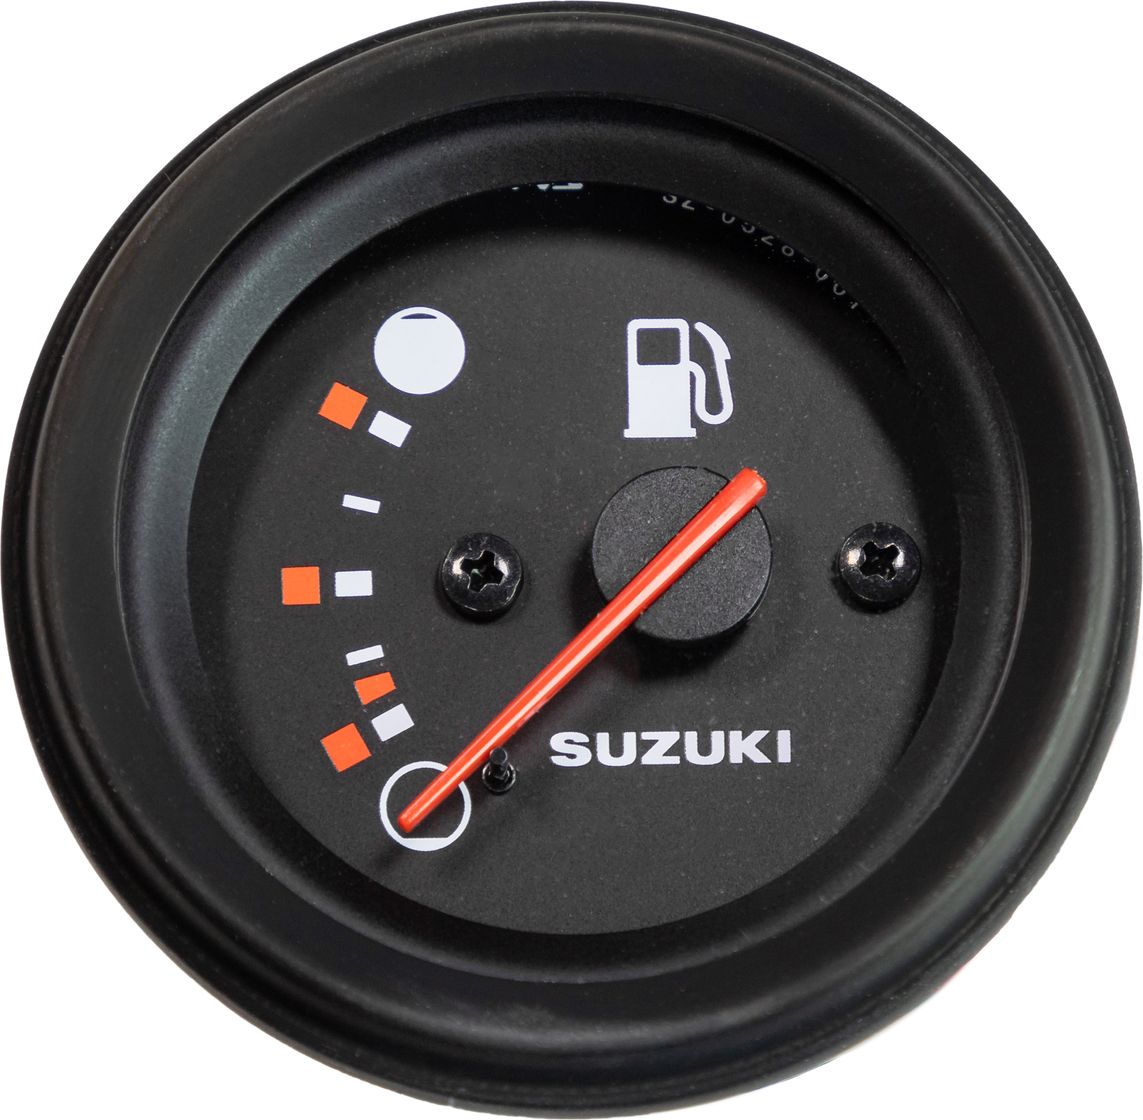 указатель уровня топлива suzuki df25 250 dt25 40 3430093j03000 Указатель уровня топлива Suzuki DF25-250/DT25-40, черный 3430093J02000